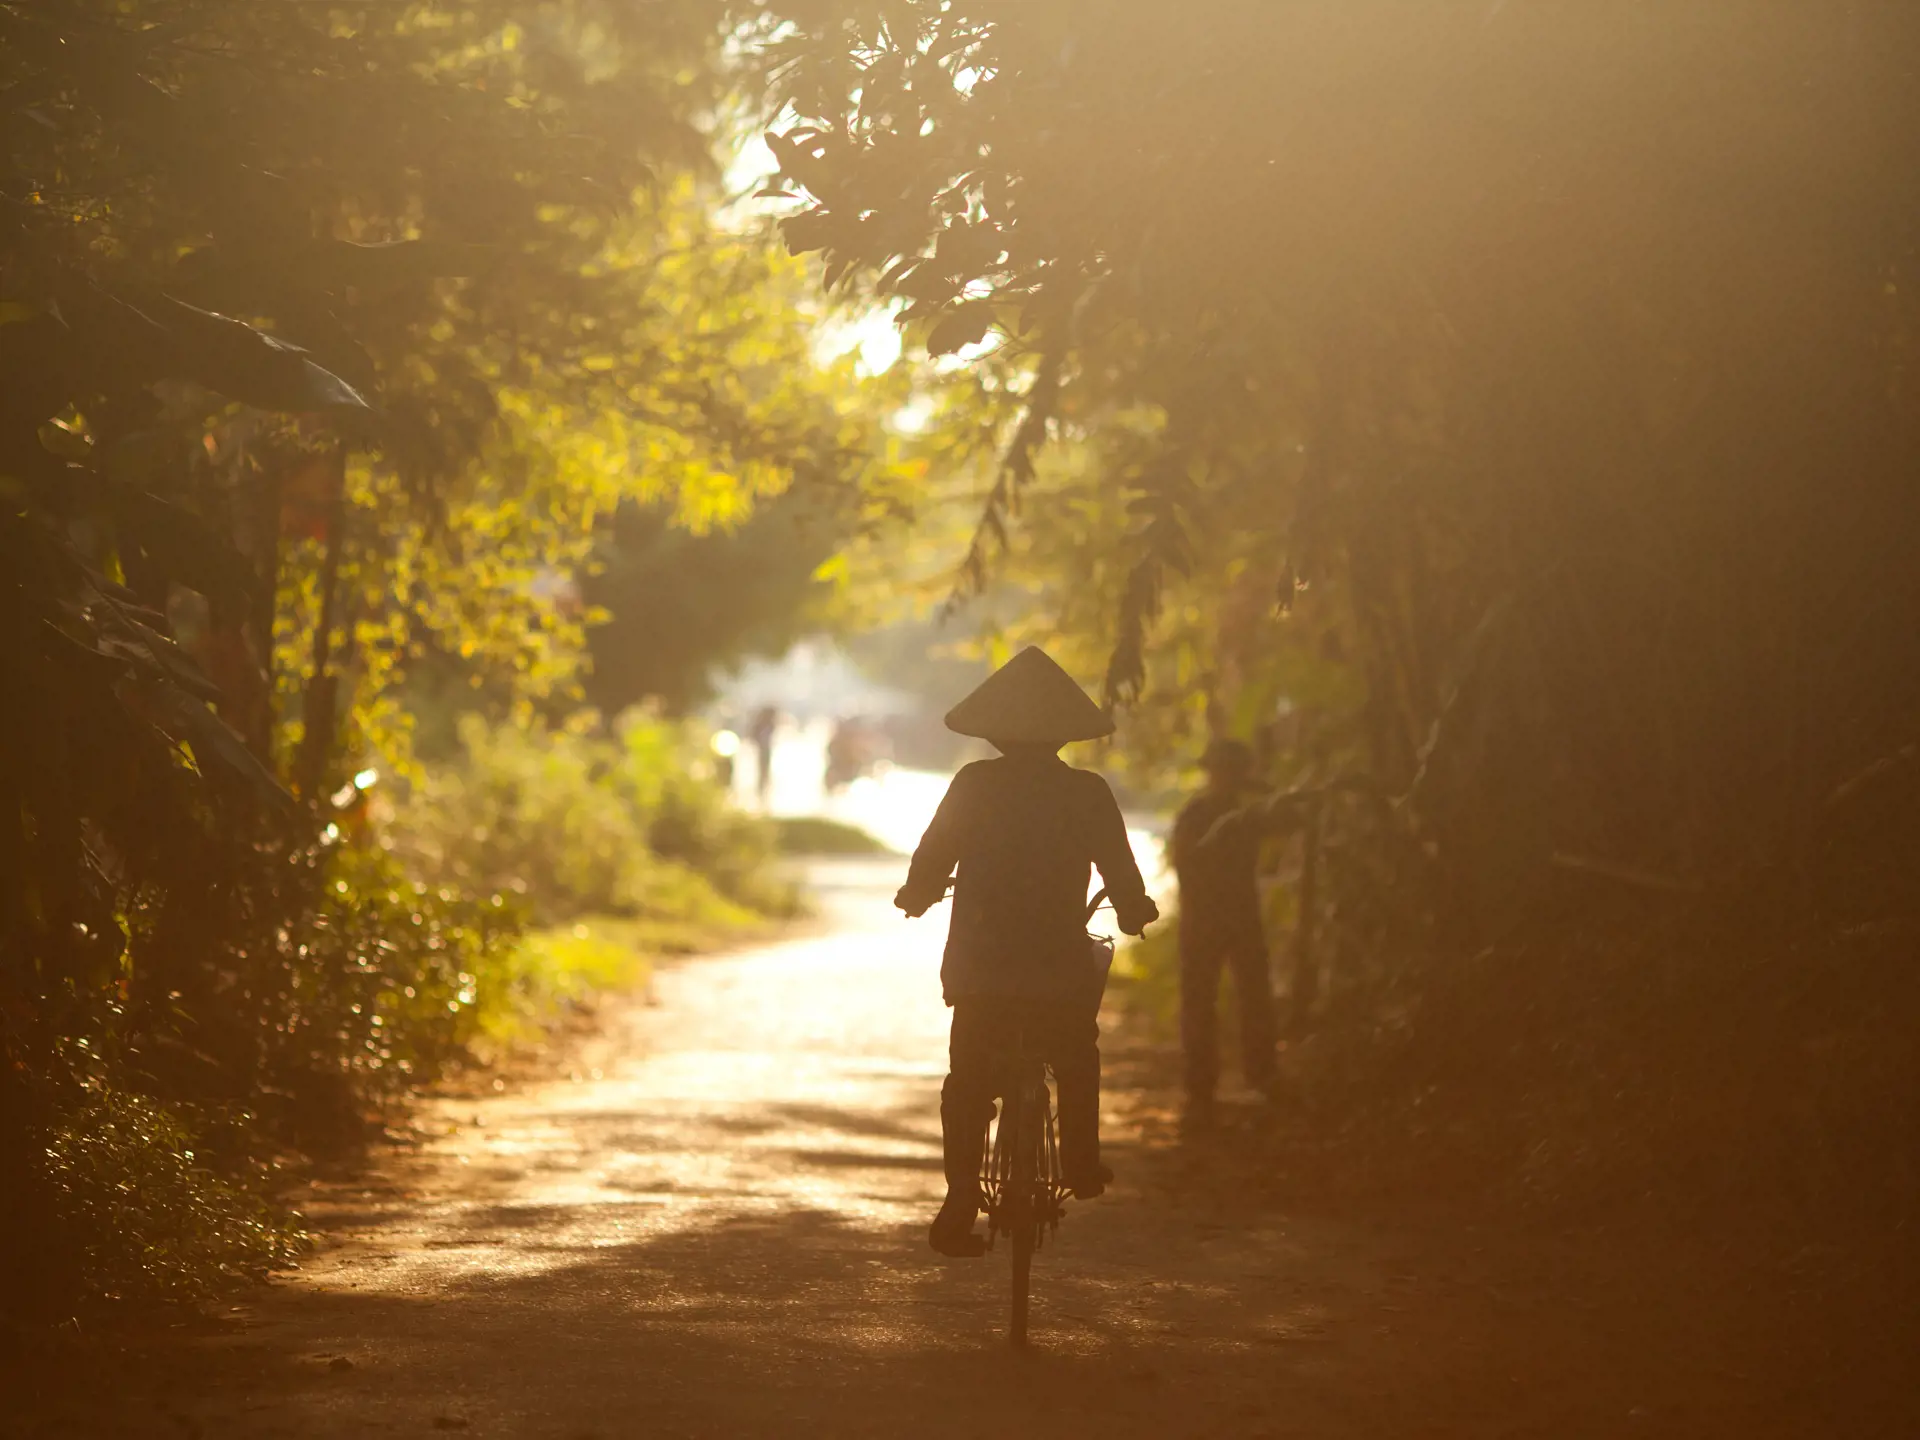 NINH BINH - Området ved Ninh Binh indbyder til en cykeltur mellem små uspolerede landsbyer. 